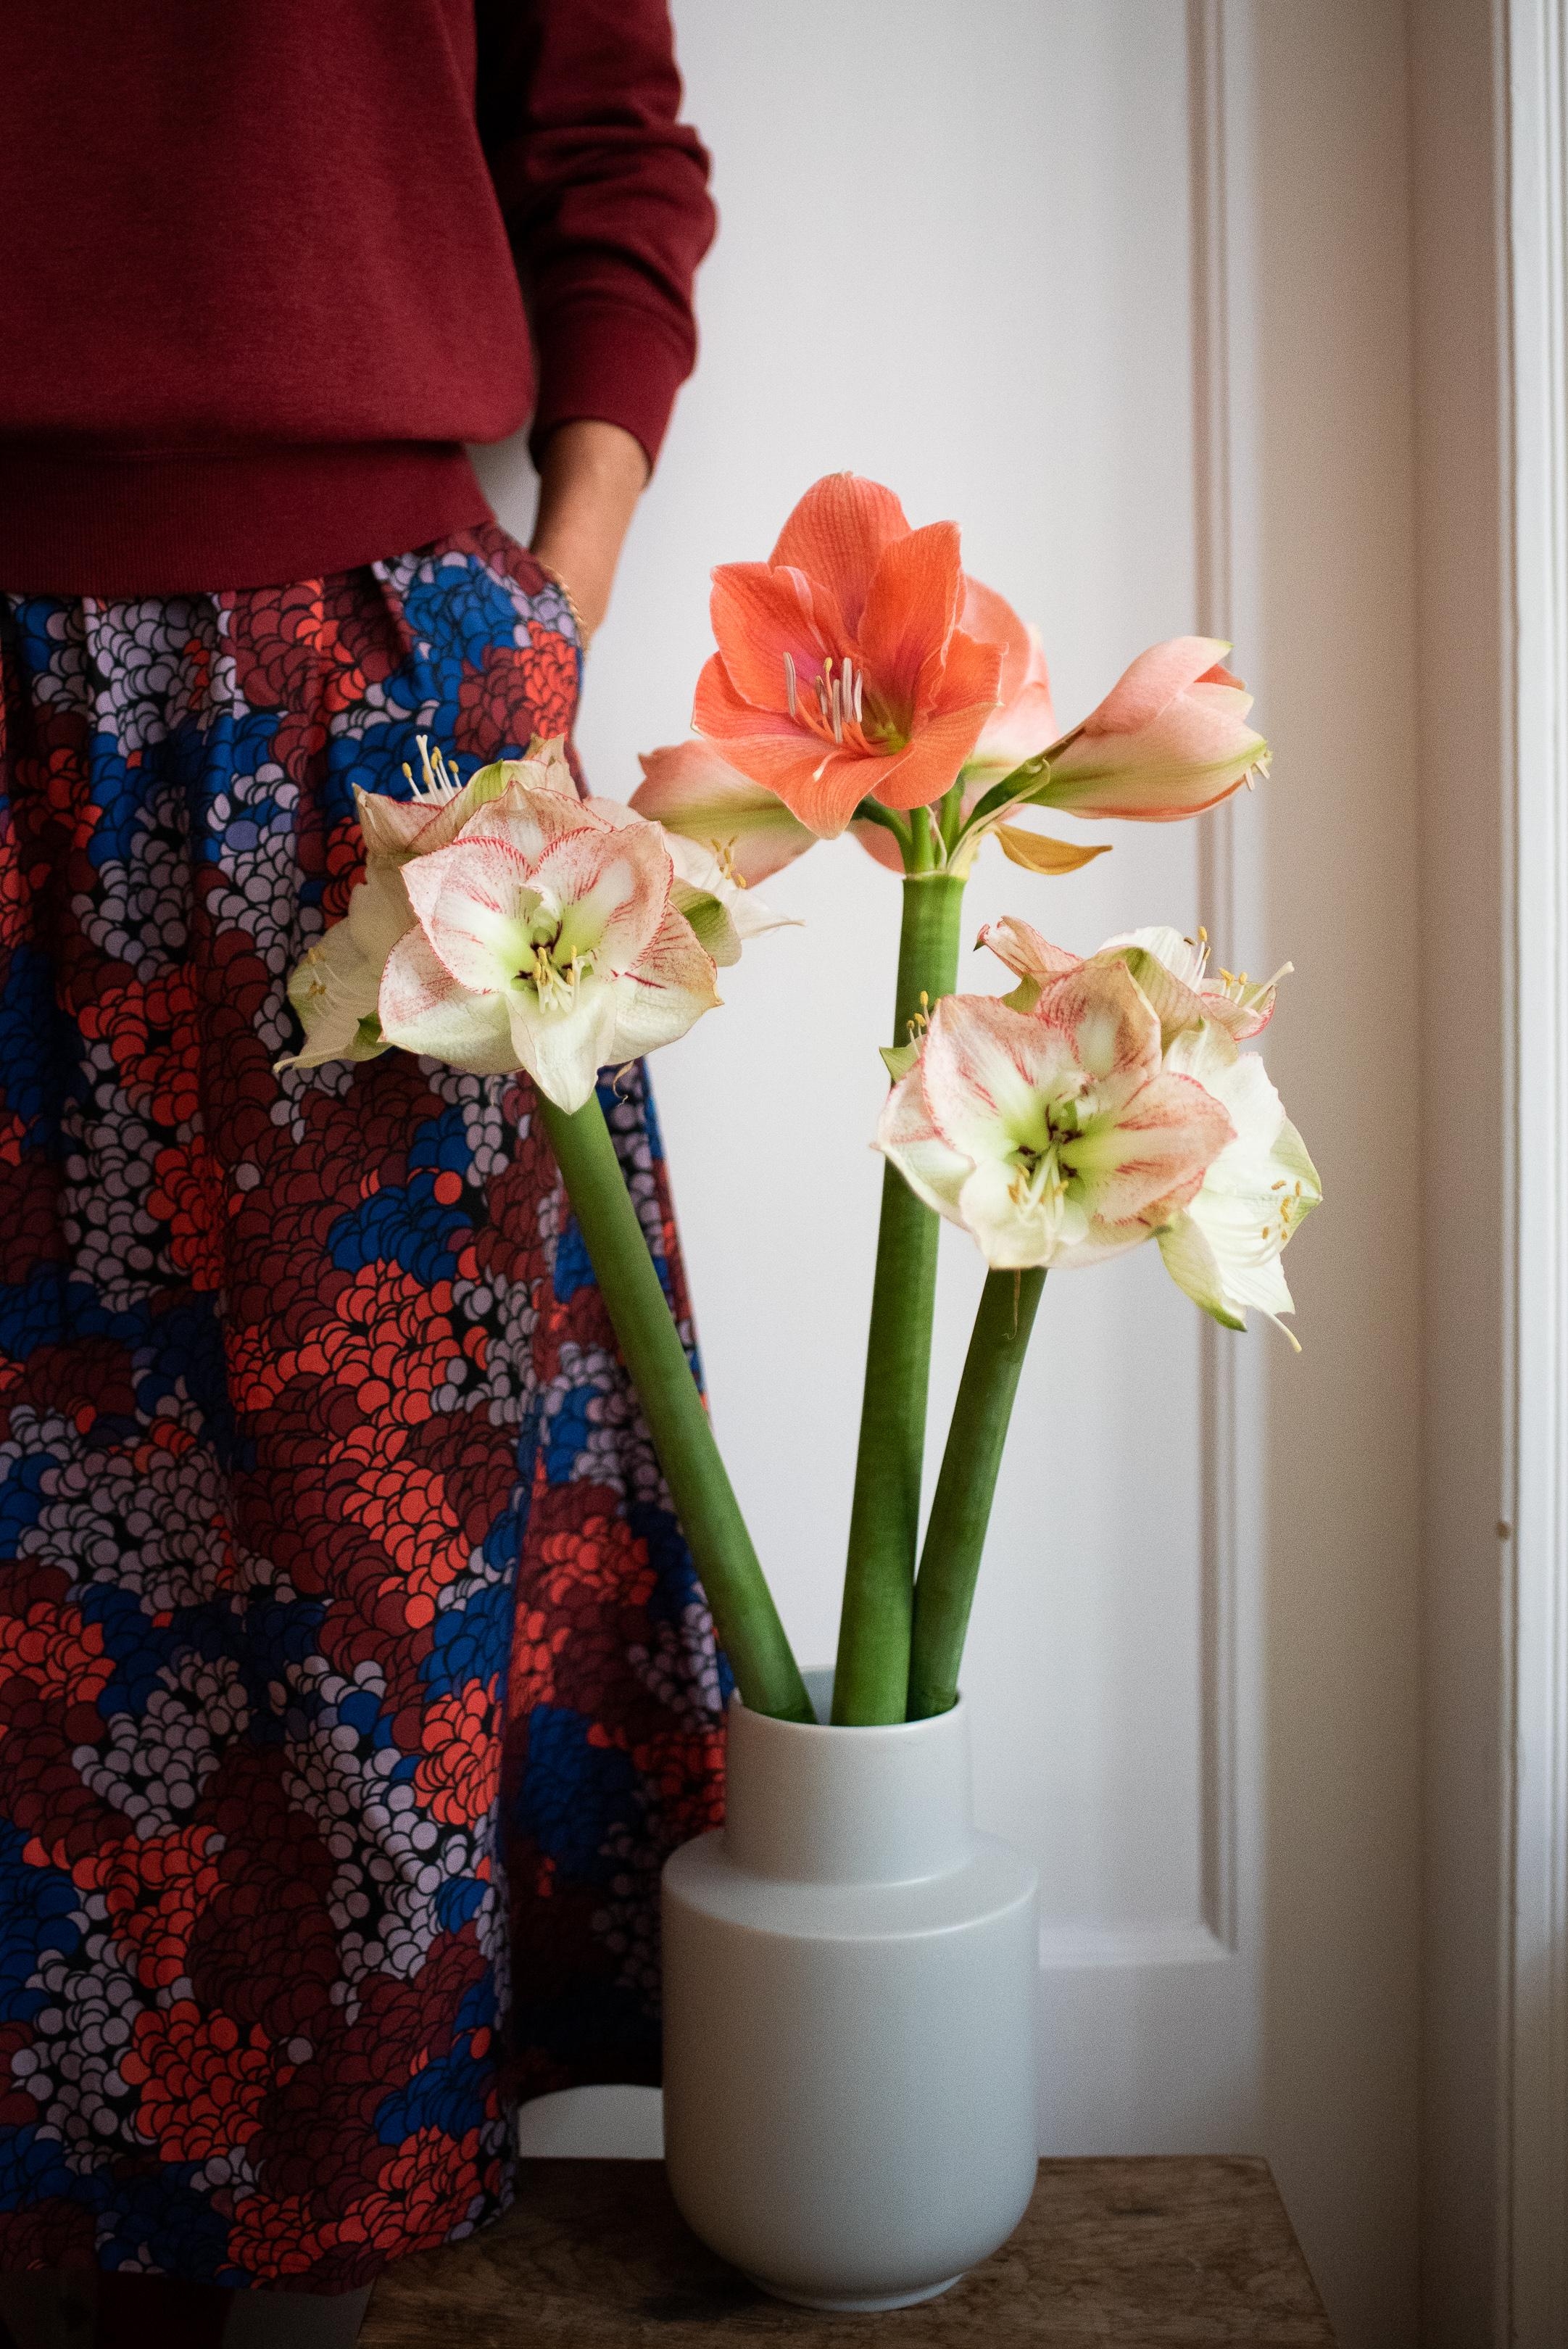 Happy Sunday! #amaryllis #freshflowers #fashioncrush #sundaymood